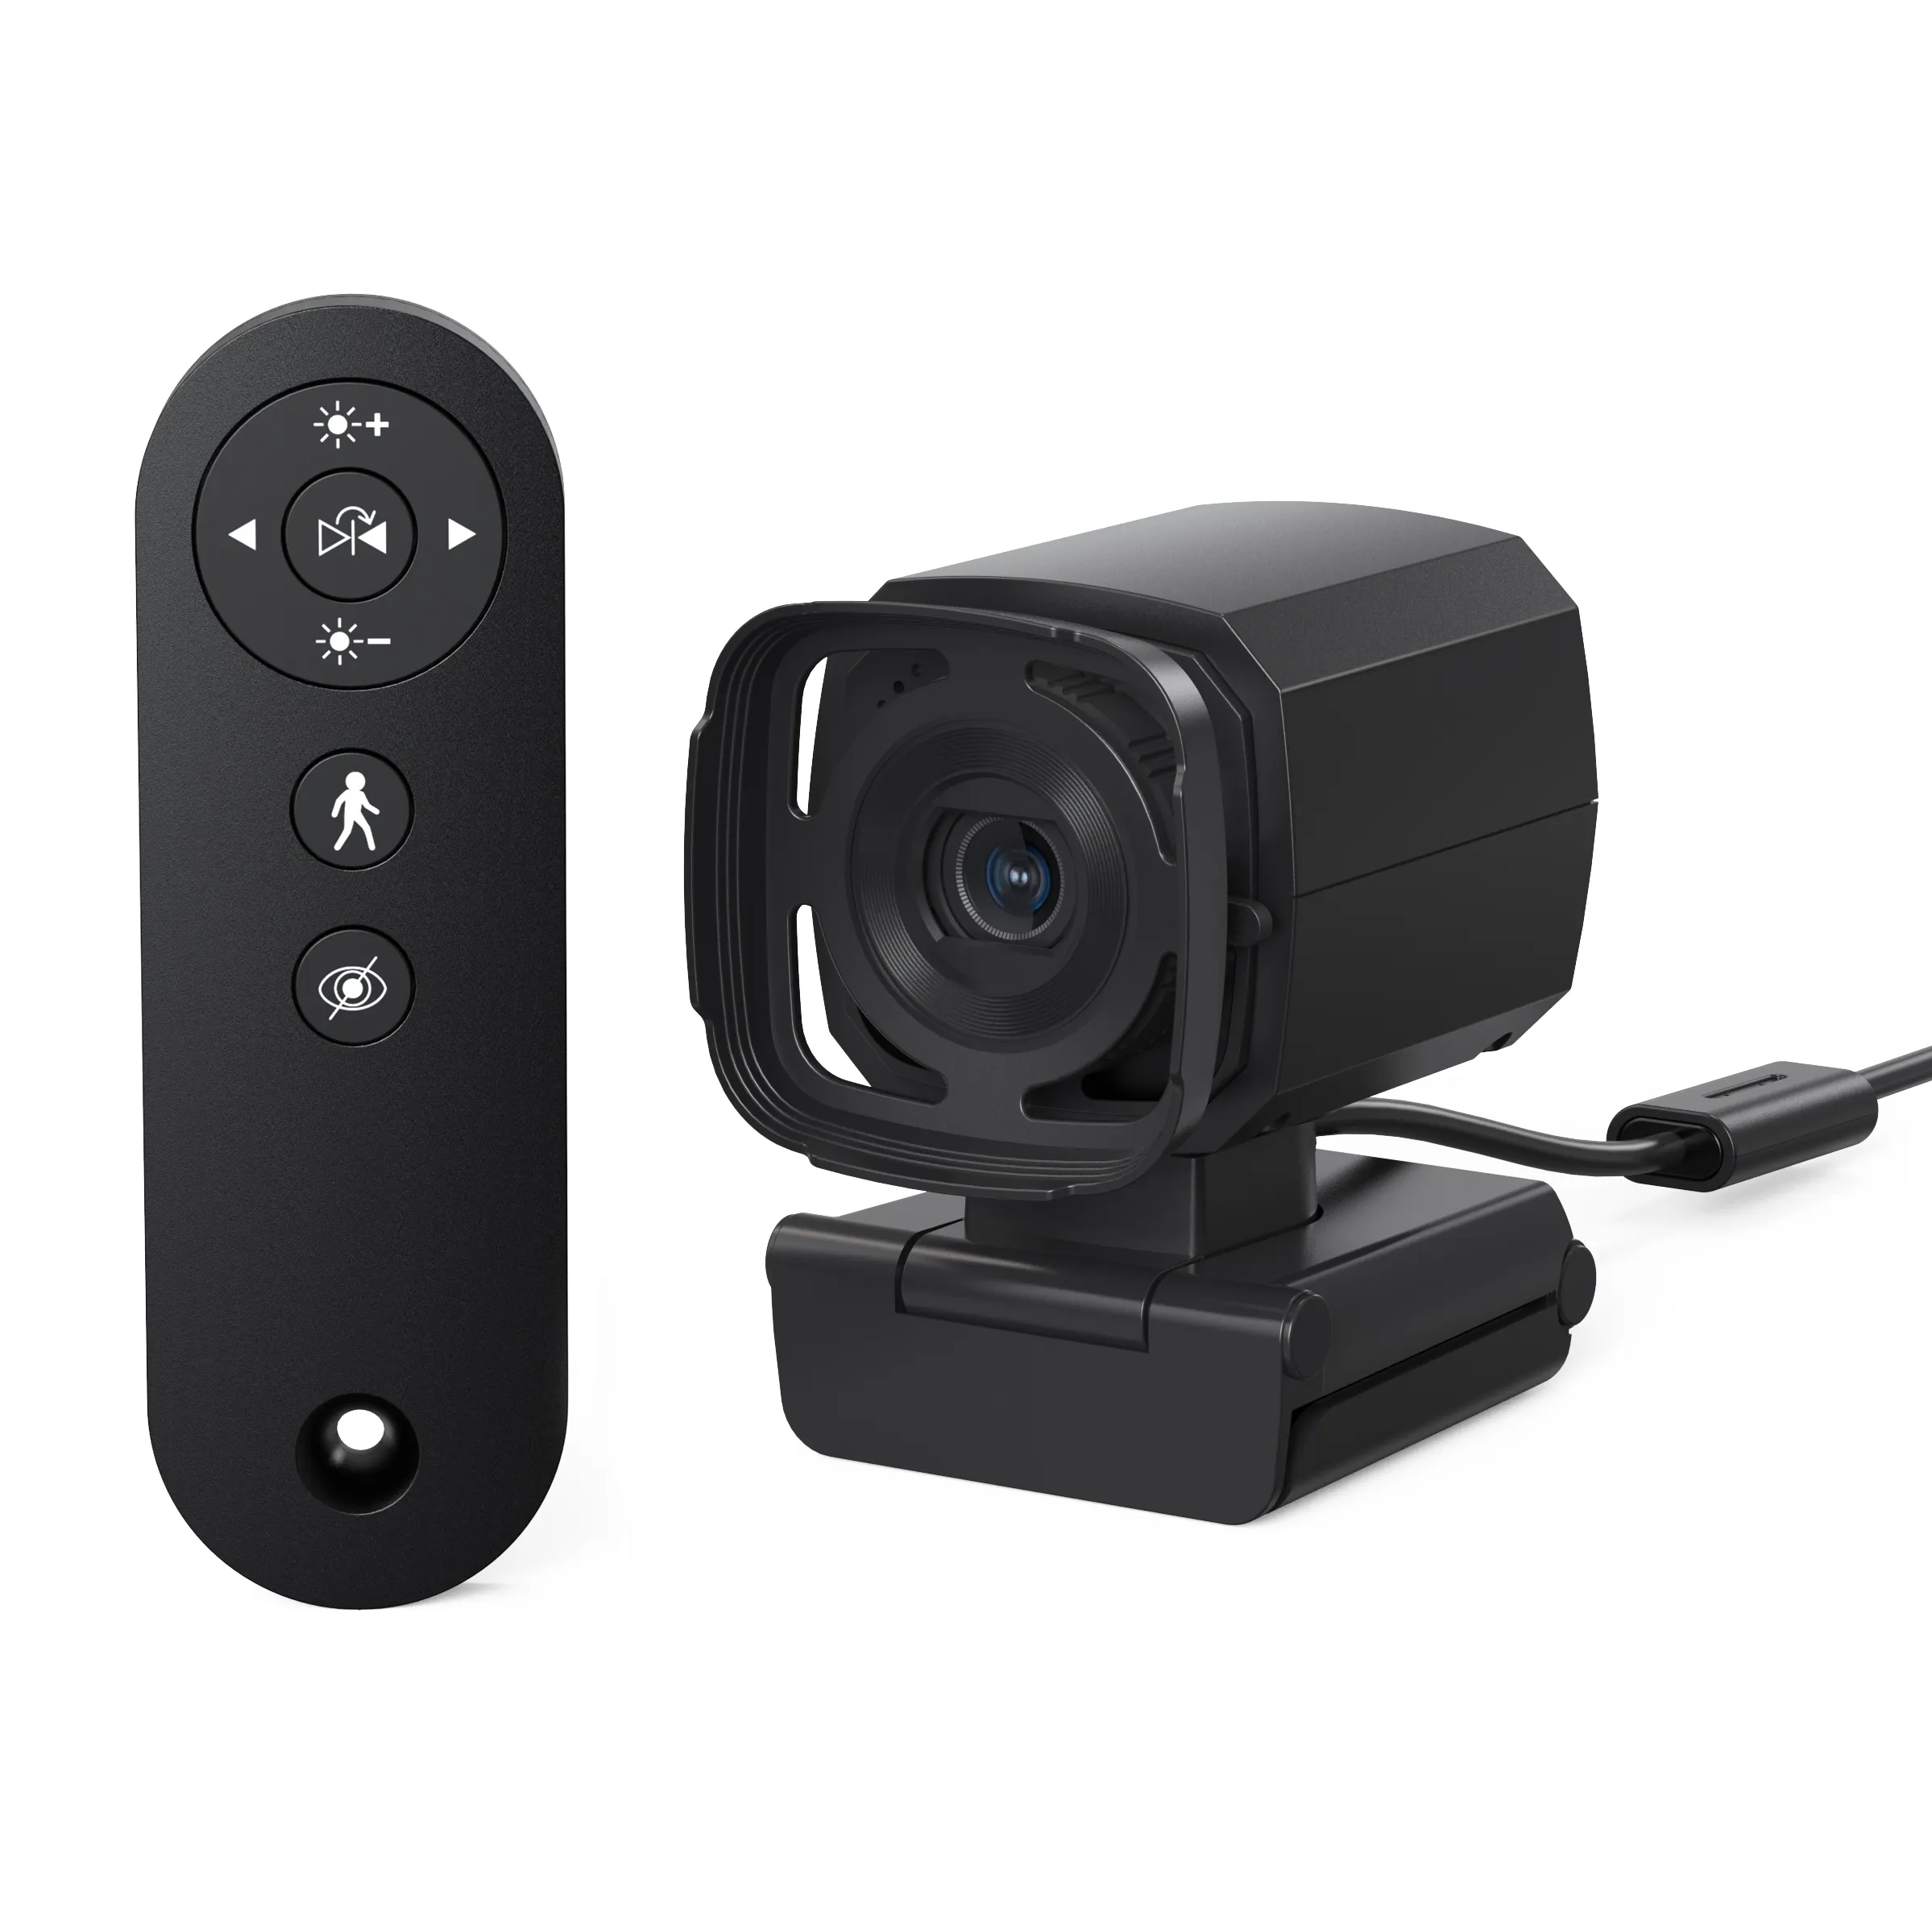 Kamera Web Pengajaran Streaming Pelacakan Otomatis, Kamera Web 1080P 30Fps dengan Remote Kontrol